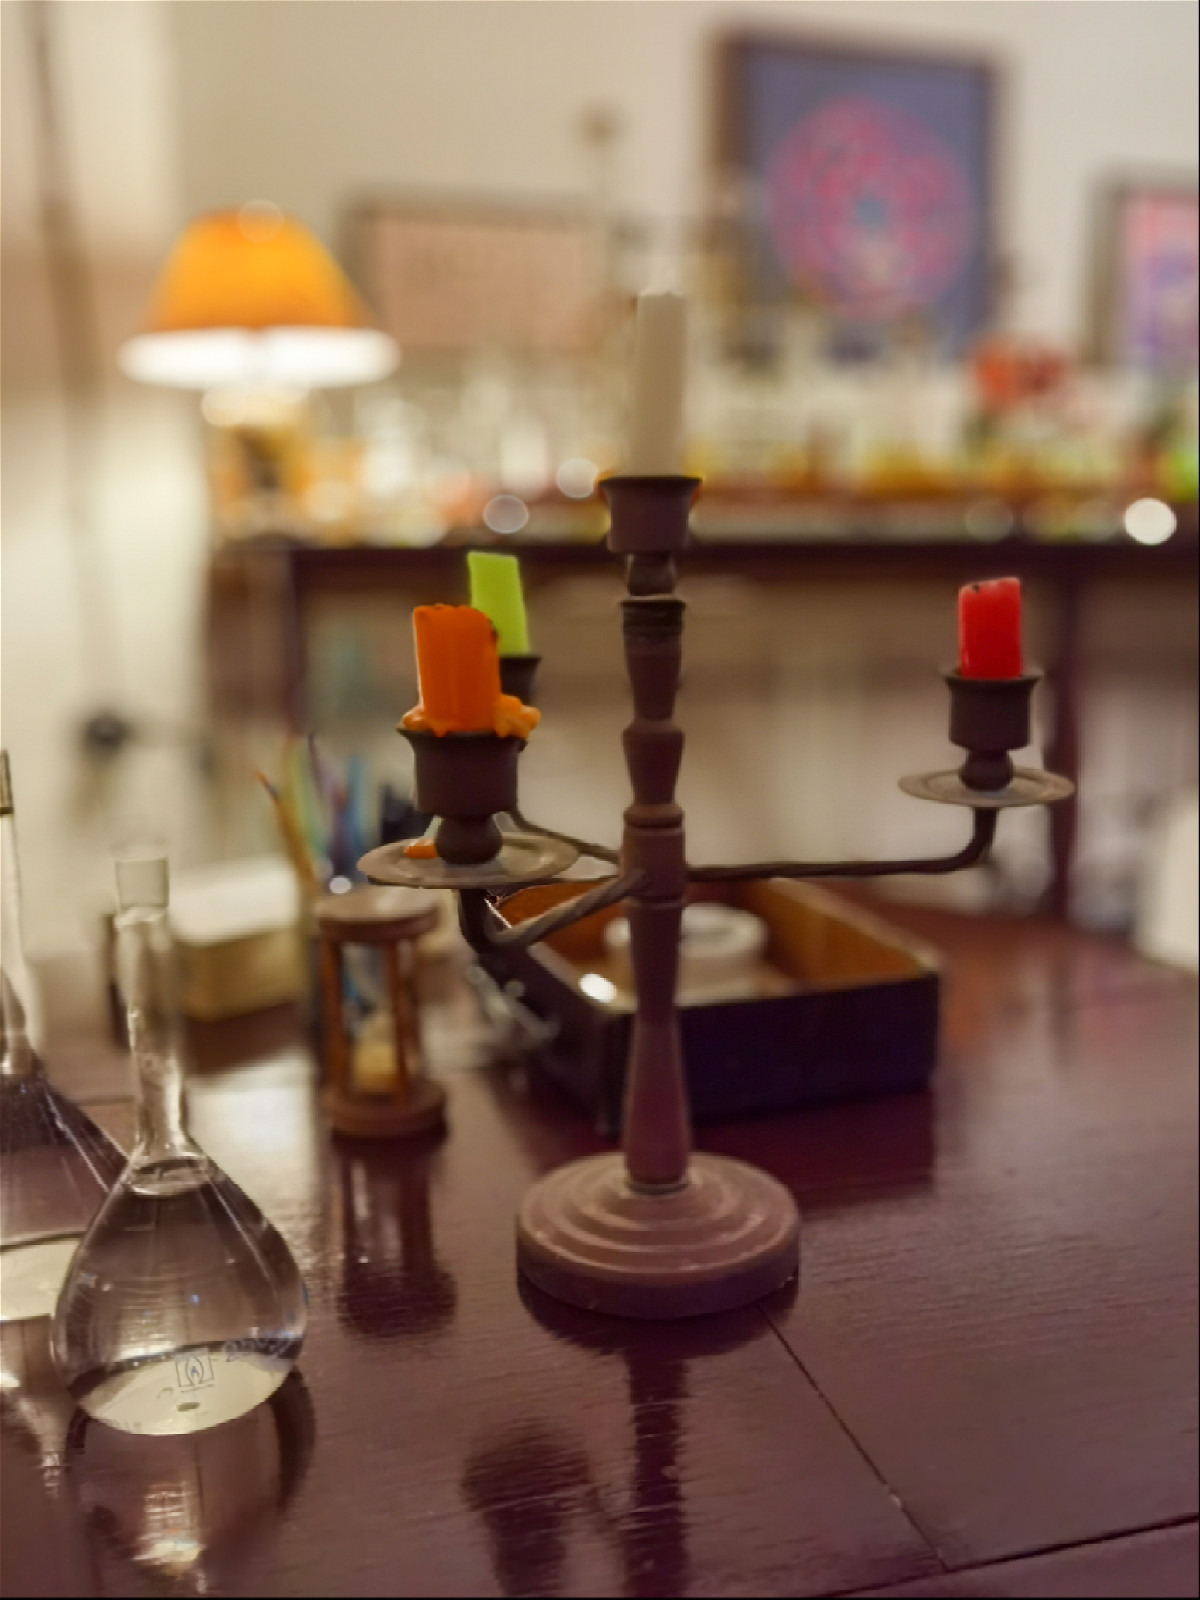 Свечи в подсвечнике и склянки с водой на столе